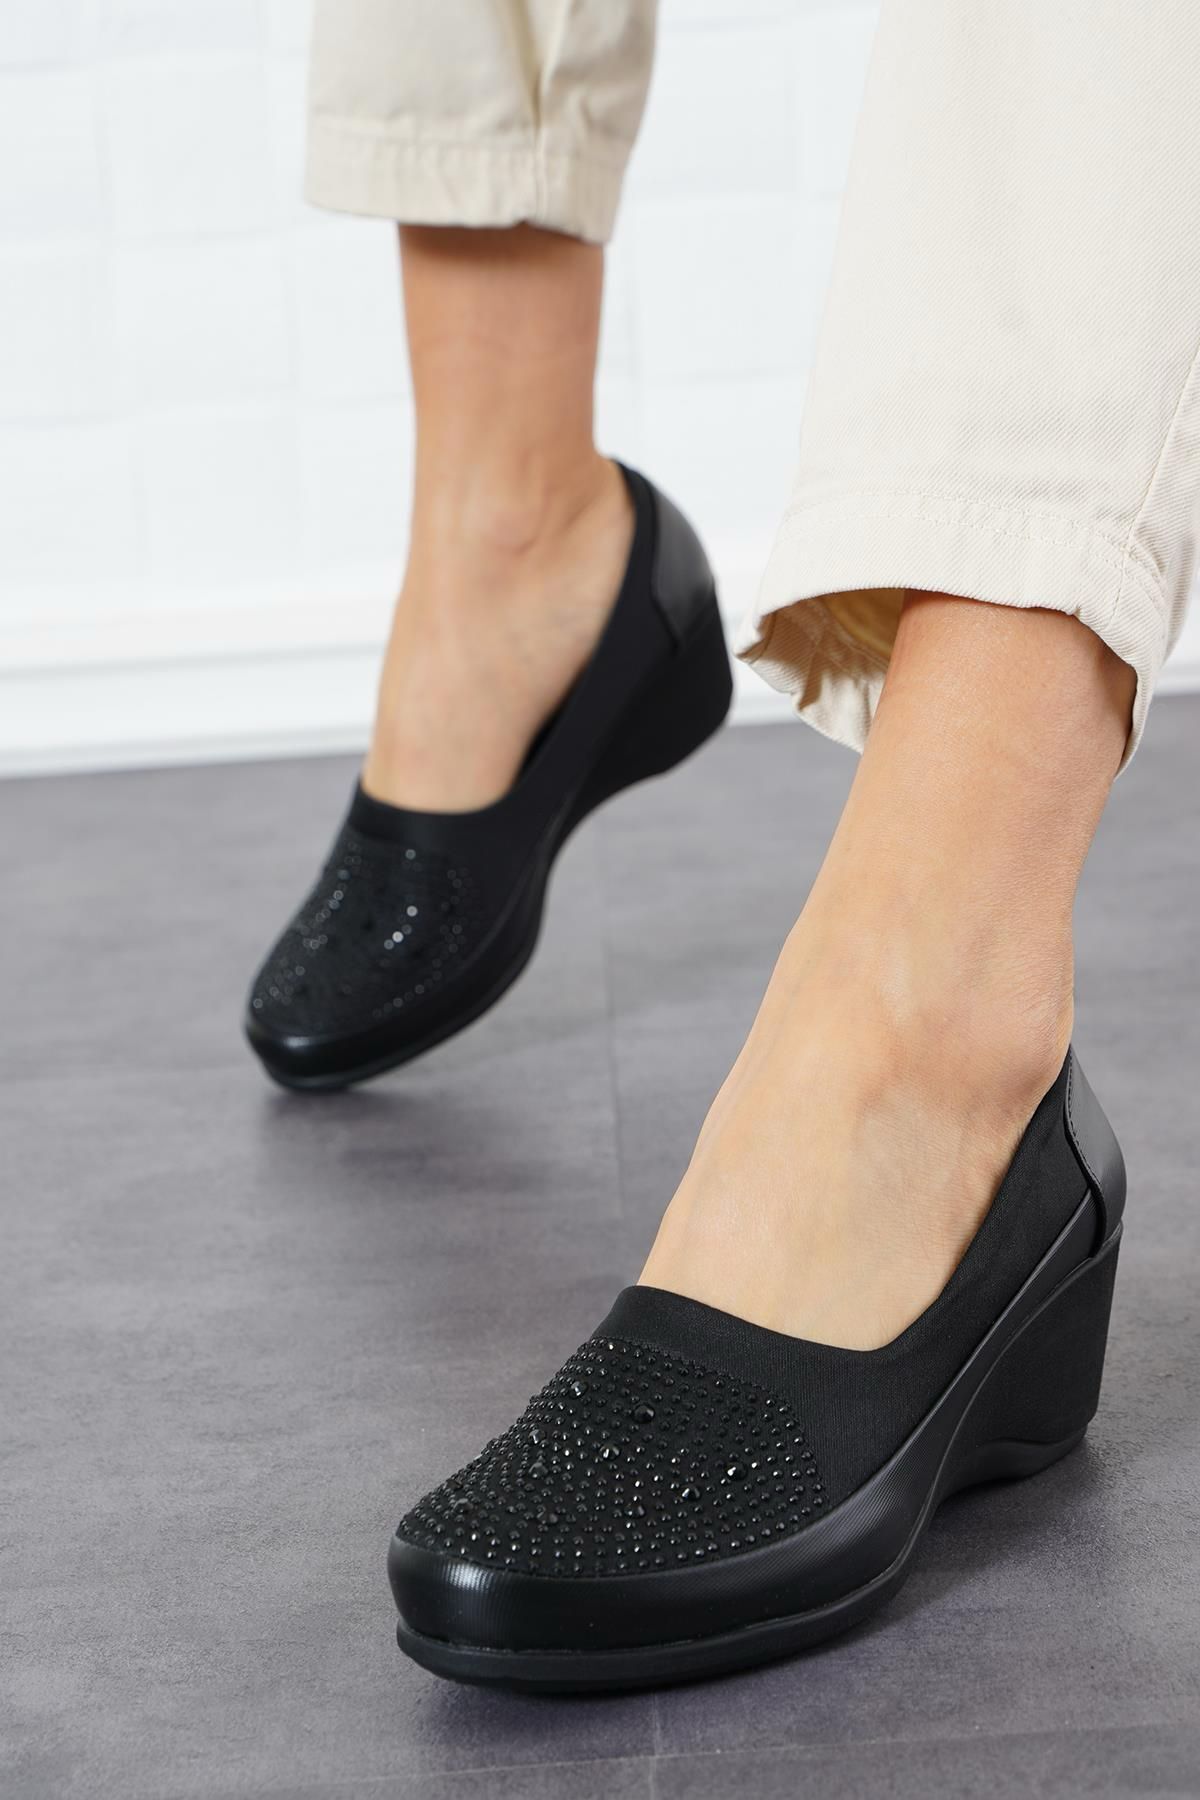 CanBambi Ayna Taşlı Kadın Dolgu Topuklu Ayakkabı Siyah